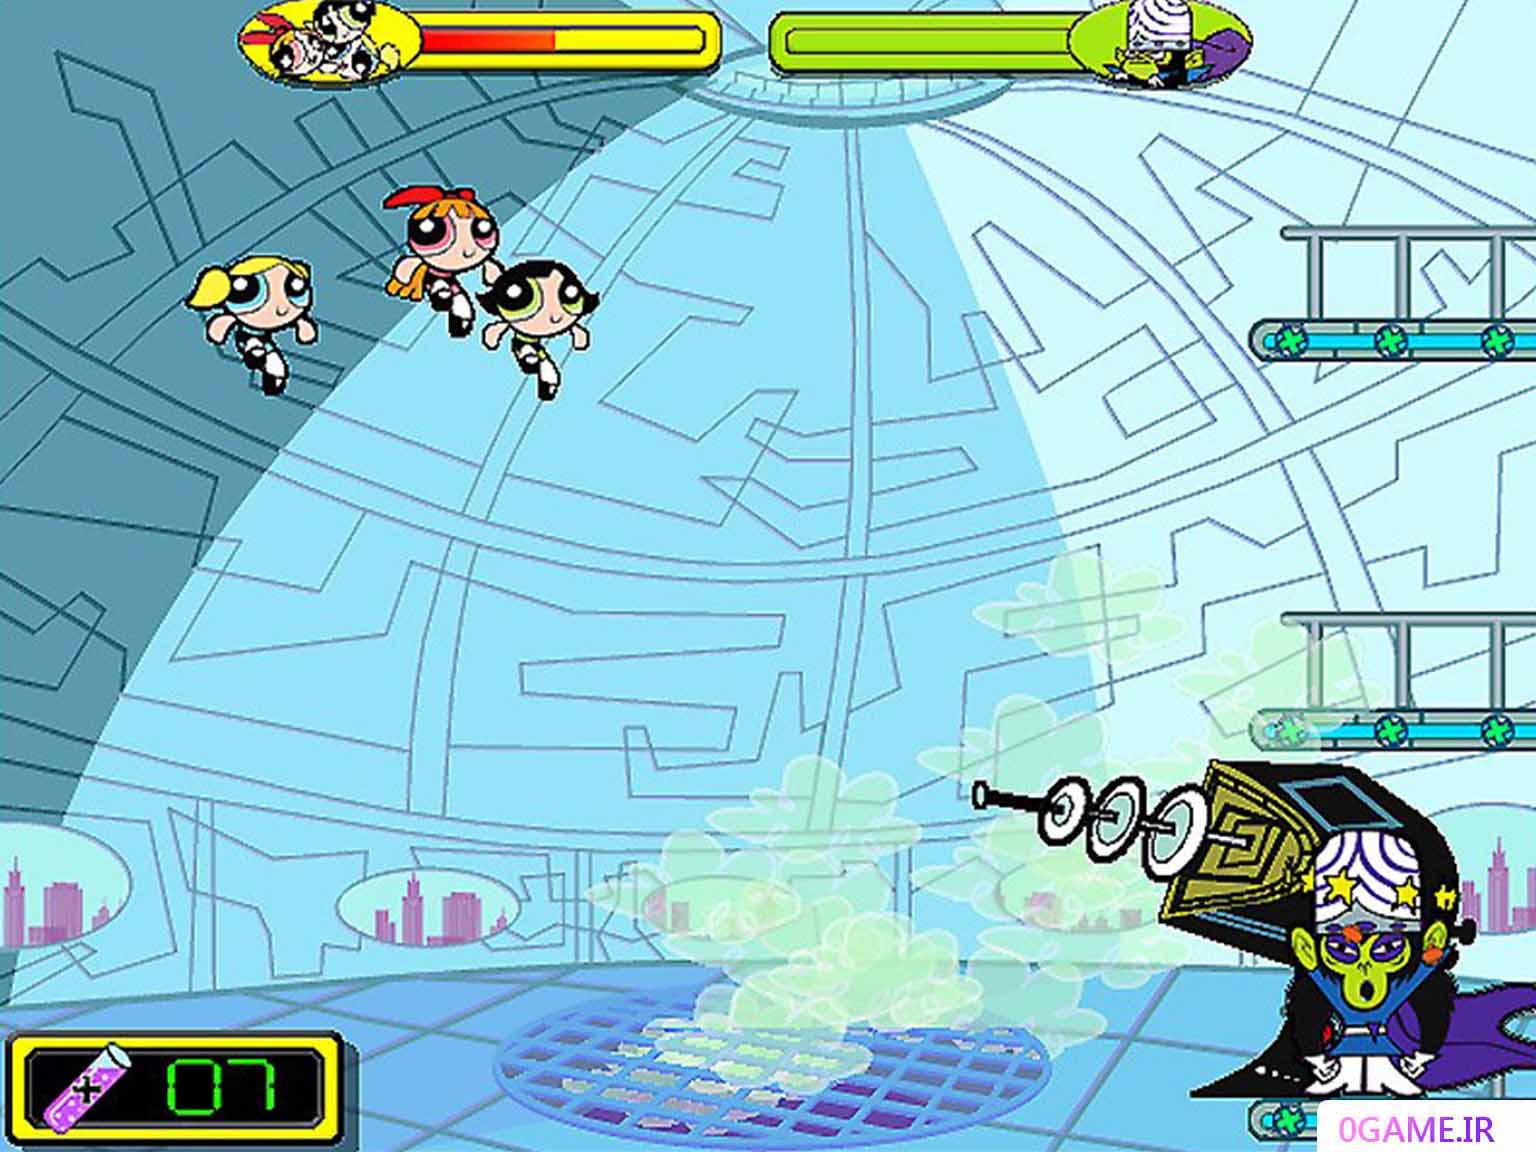 دانلود بازی دختران نیرومند (The Powerpuff Girls) نسخه کامل برای کامپیوتر